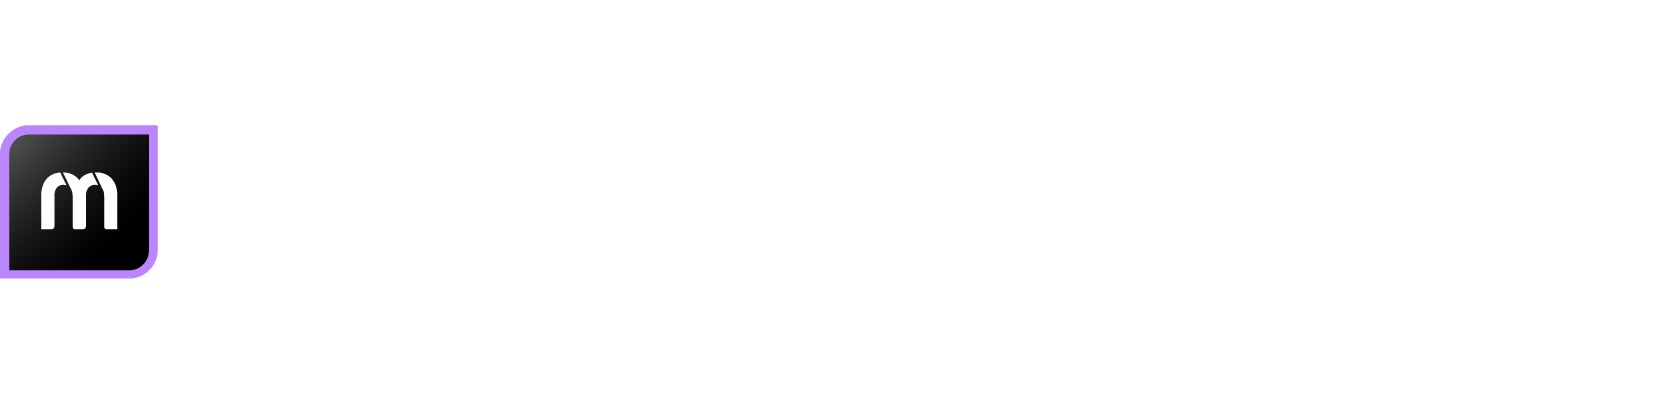 logo NODE-maps